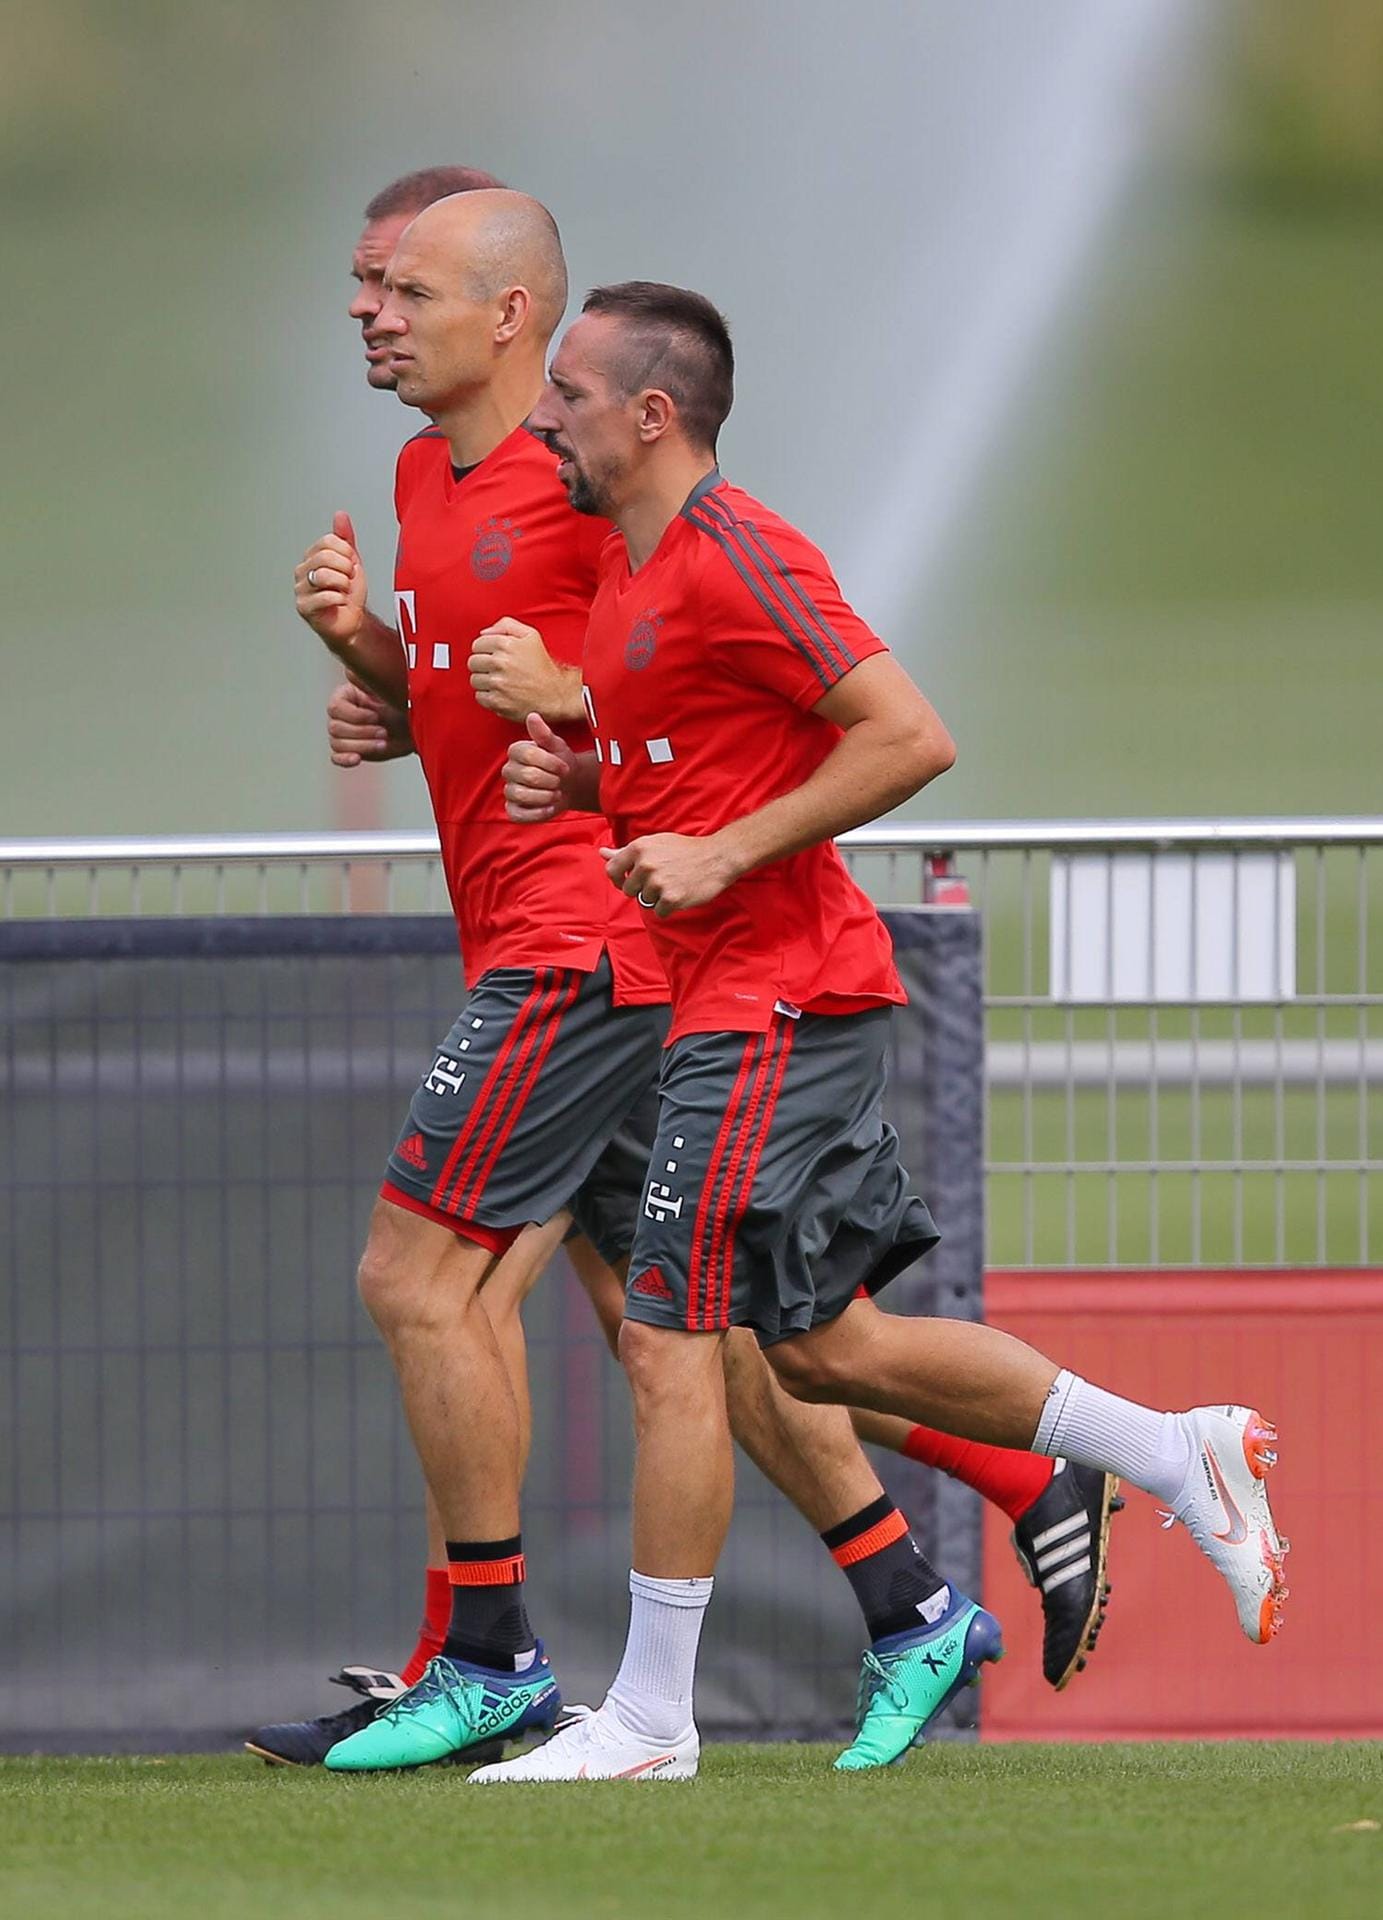 Arjen Robben und Franck Ribéry sind schon im Training. Robben verpasste mit den Niederlanden die WM, Ribéry hat die Nationalelf längst ad acta gelegt. Nun wollen sie noch einmal beim FC Bayern durchstarten.